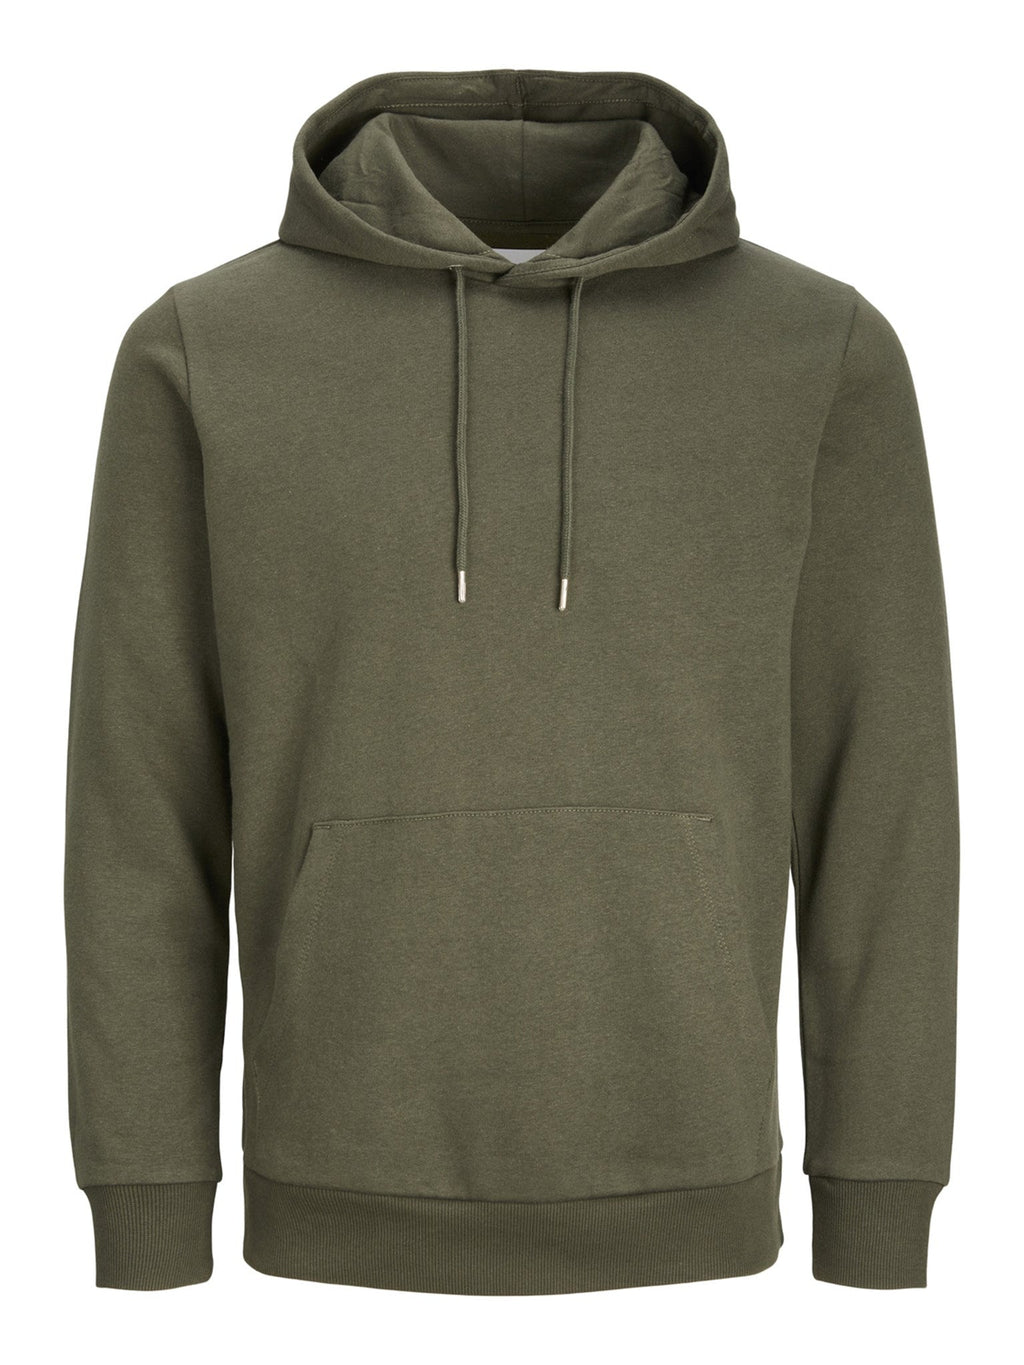 Basic Sweatsuit mit Hoodie (dunkelgrün) - Packungsgeschäft